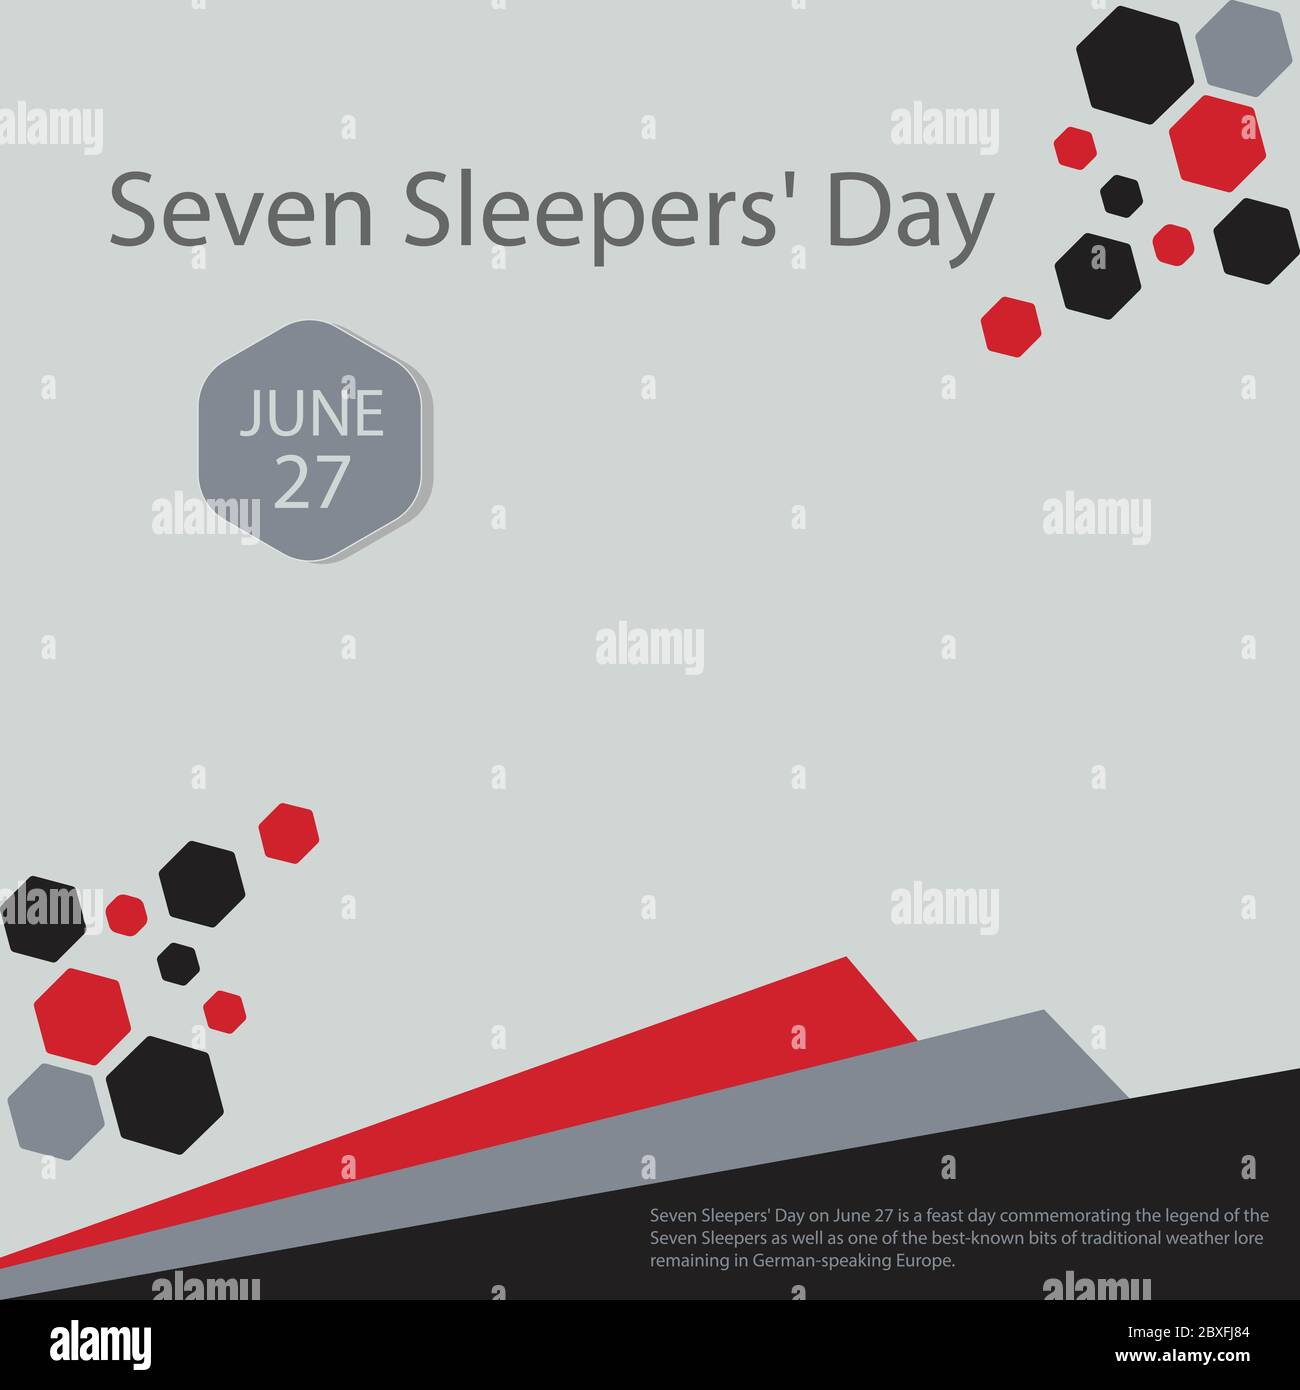 Le jour des sept dormeurs, le 27 juin, est un jour de fête commémorant la légende des sept dormeurs ainsi que l'un des morceaux les plus connus de la belette traditionnelle Illustration de Vecteur